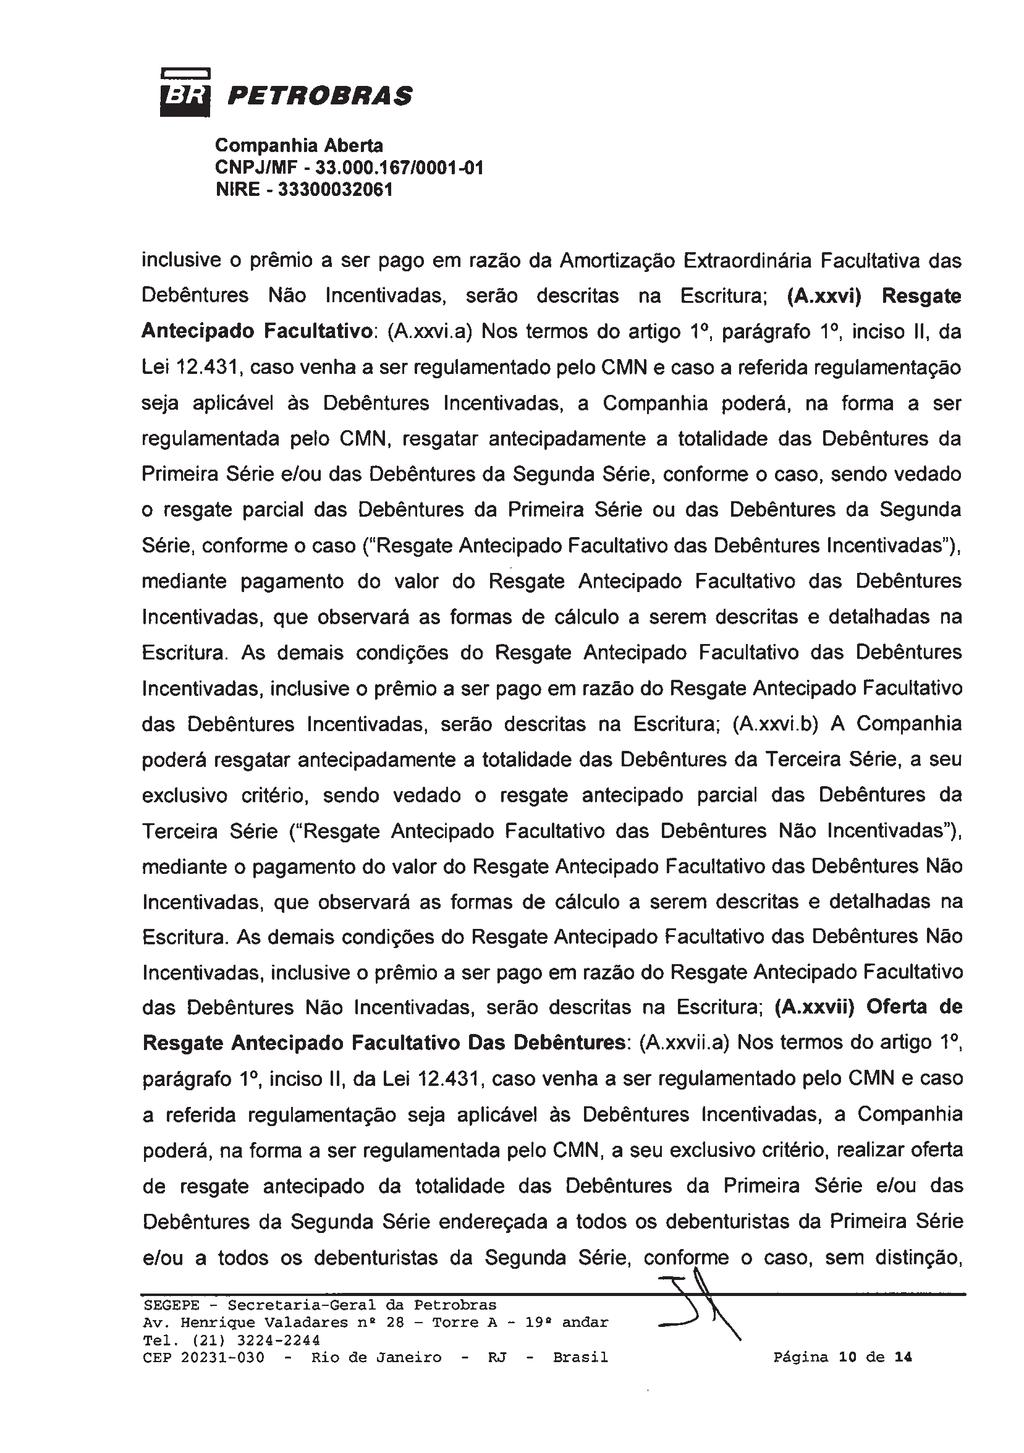 Junta Comercial do Estado do Rio de Janeiro Empresa: PETROLEO BRASILEIRO S/A PETROBRAS NIRE: 333.